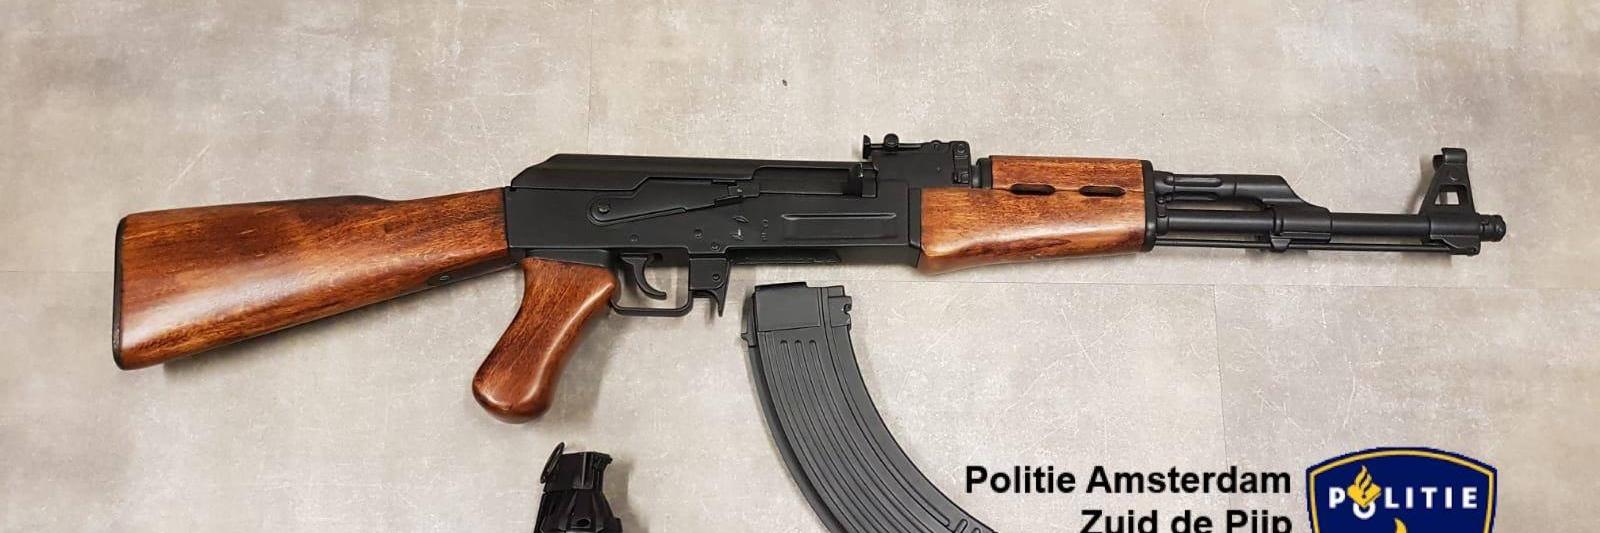 Kwik Annoteren bijtend Man probeert onklaar gemaakt geweer te verkopen in Amsterdam - NH Nieuws